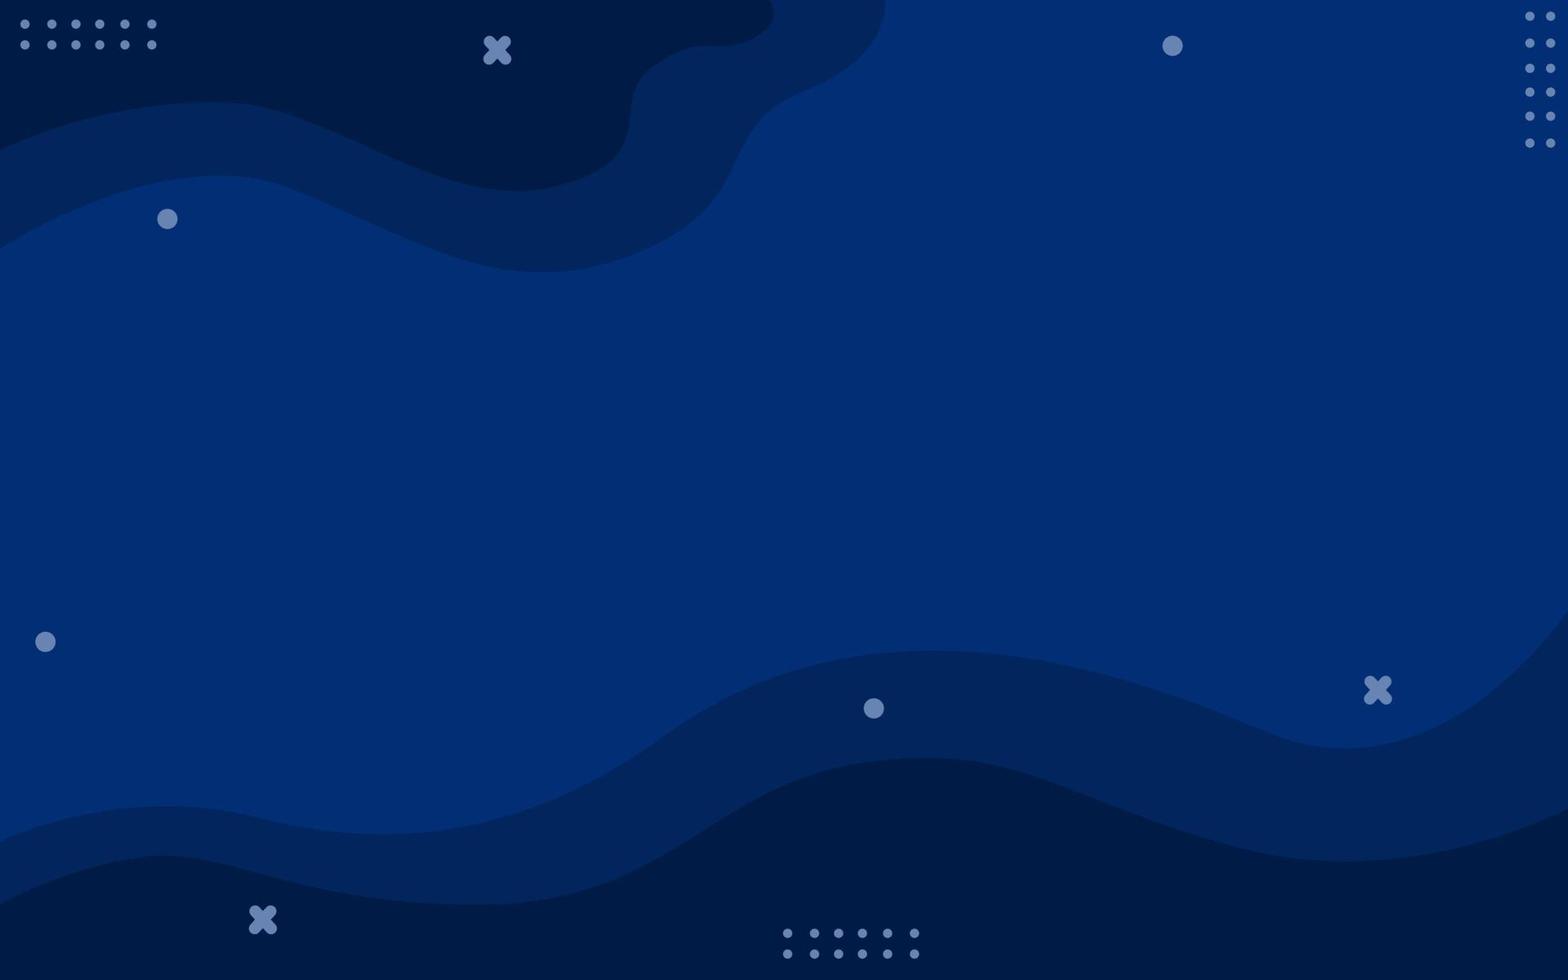 abstrakt bakgrundsdesign i blå färg. design för affärsmallar, webbplatser och banners. abstrakt dekoration vektorillustration. mörkblå bakgrund vektor